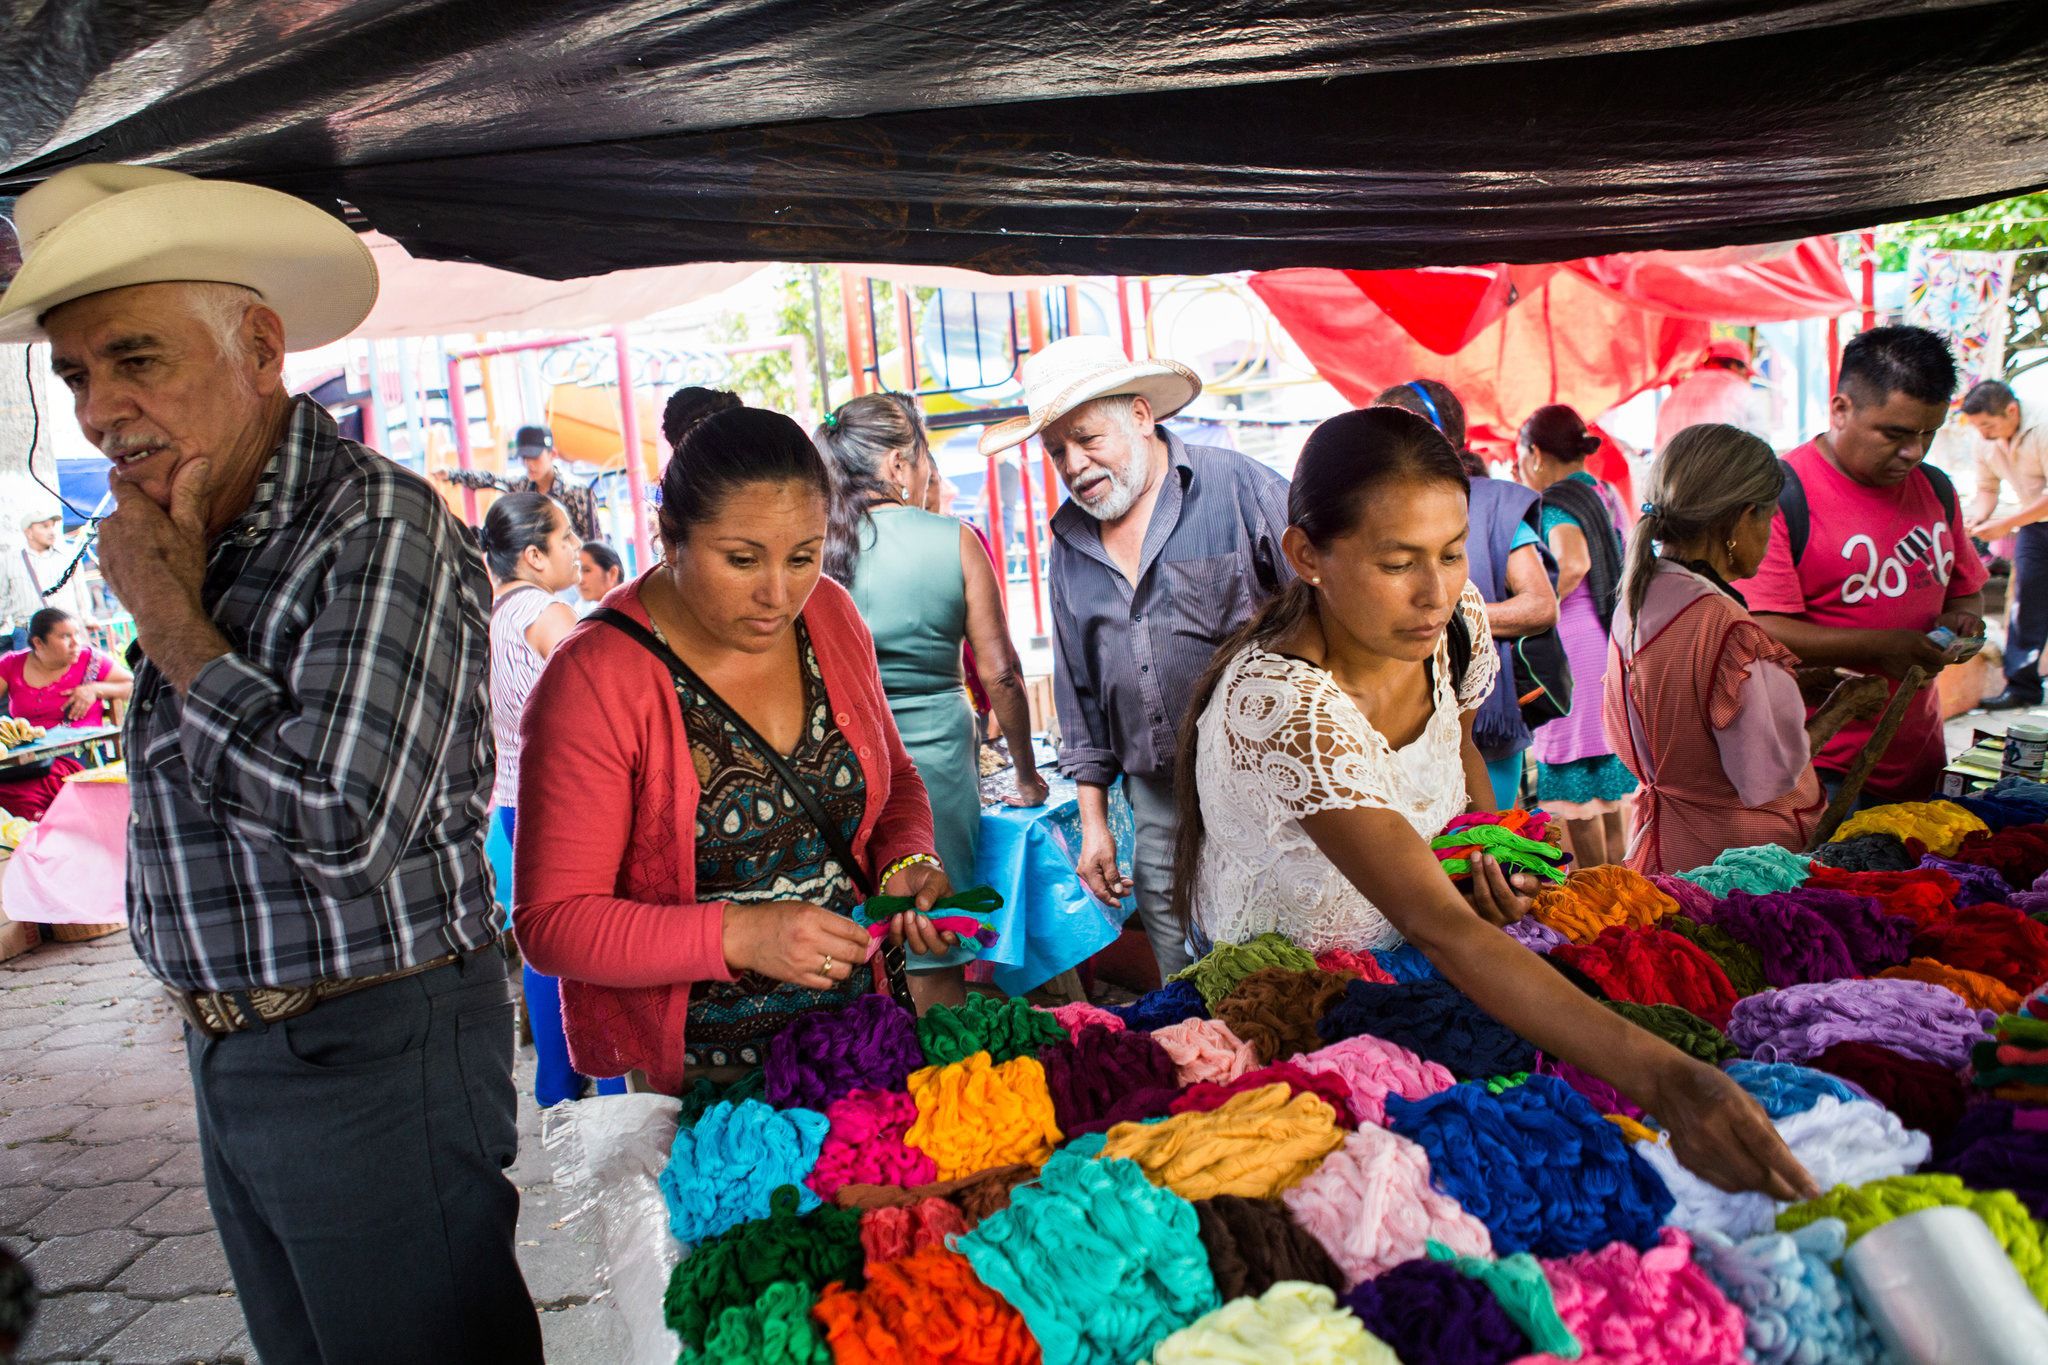 Unas mujeres compran el hilo de colores brillantes utilizado en el tipo de bordado hecho en los pueblos alrededor de Tenango de Doria, en el estado mexicano de Hidalgo.Credit...Celia Talbot Tobin para The New York Times